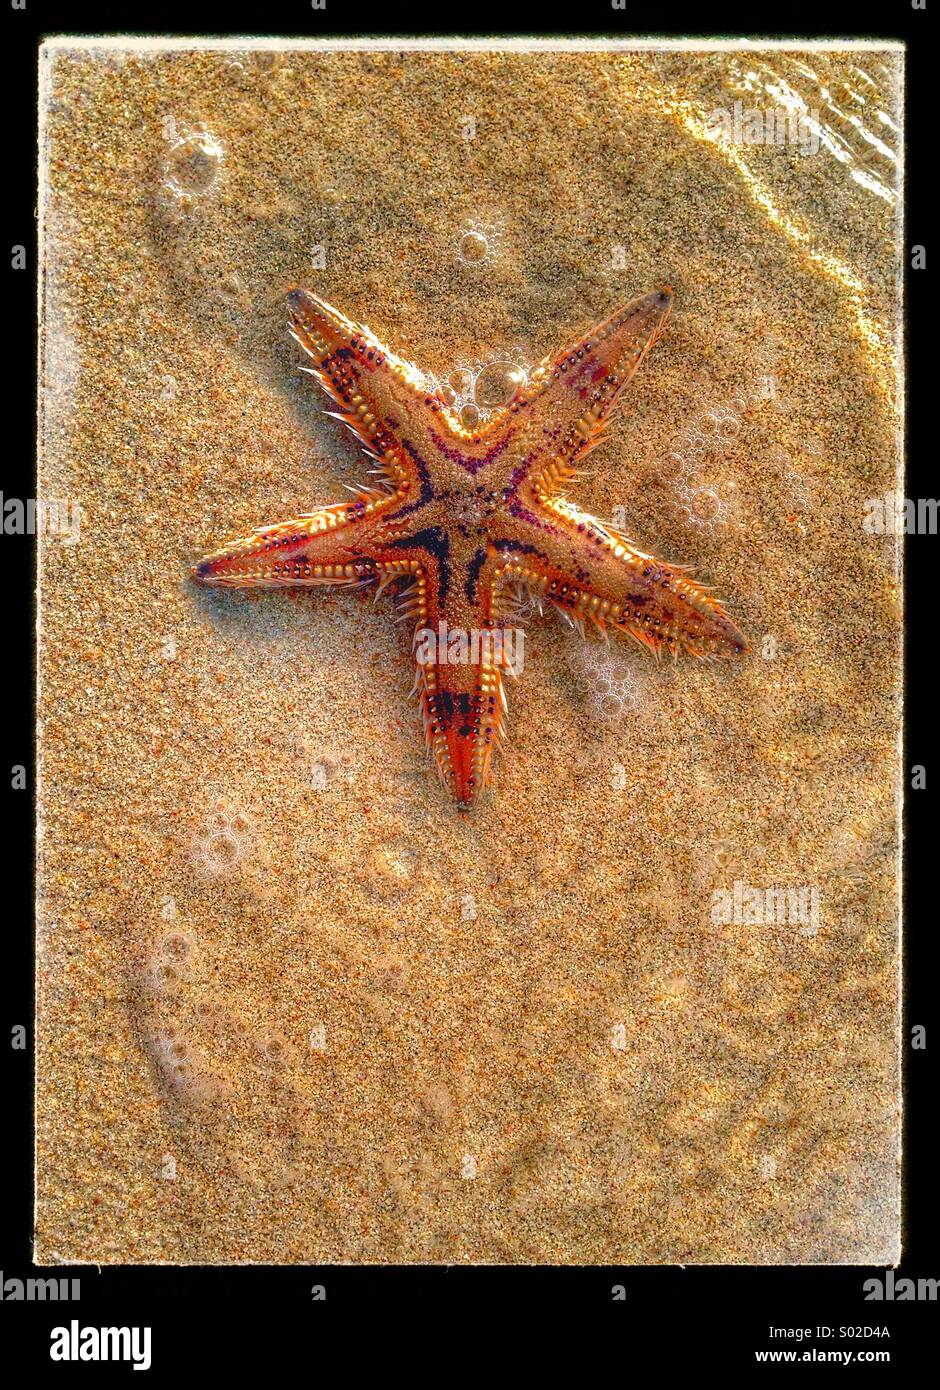 Starfish in the Arabian Gulf Stock Photo